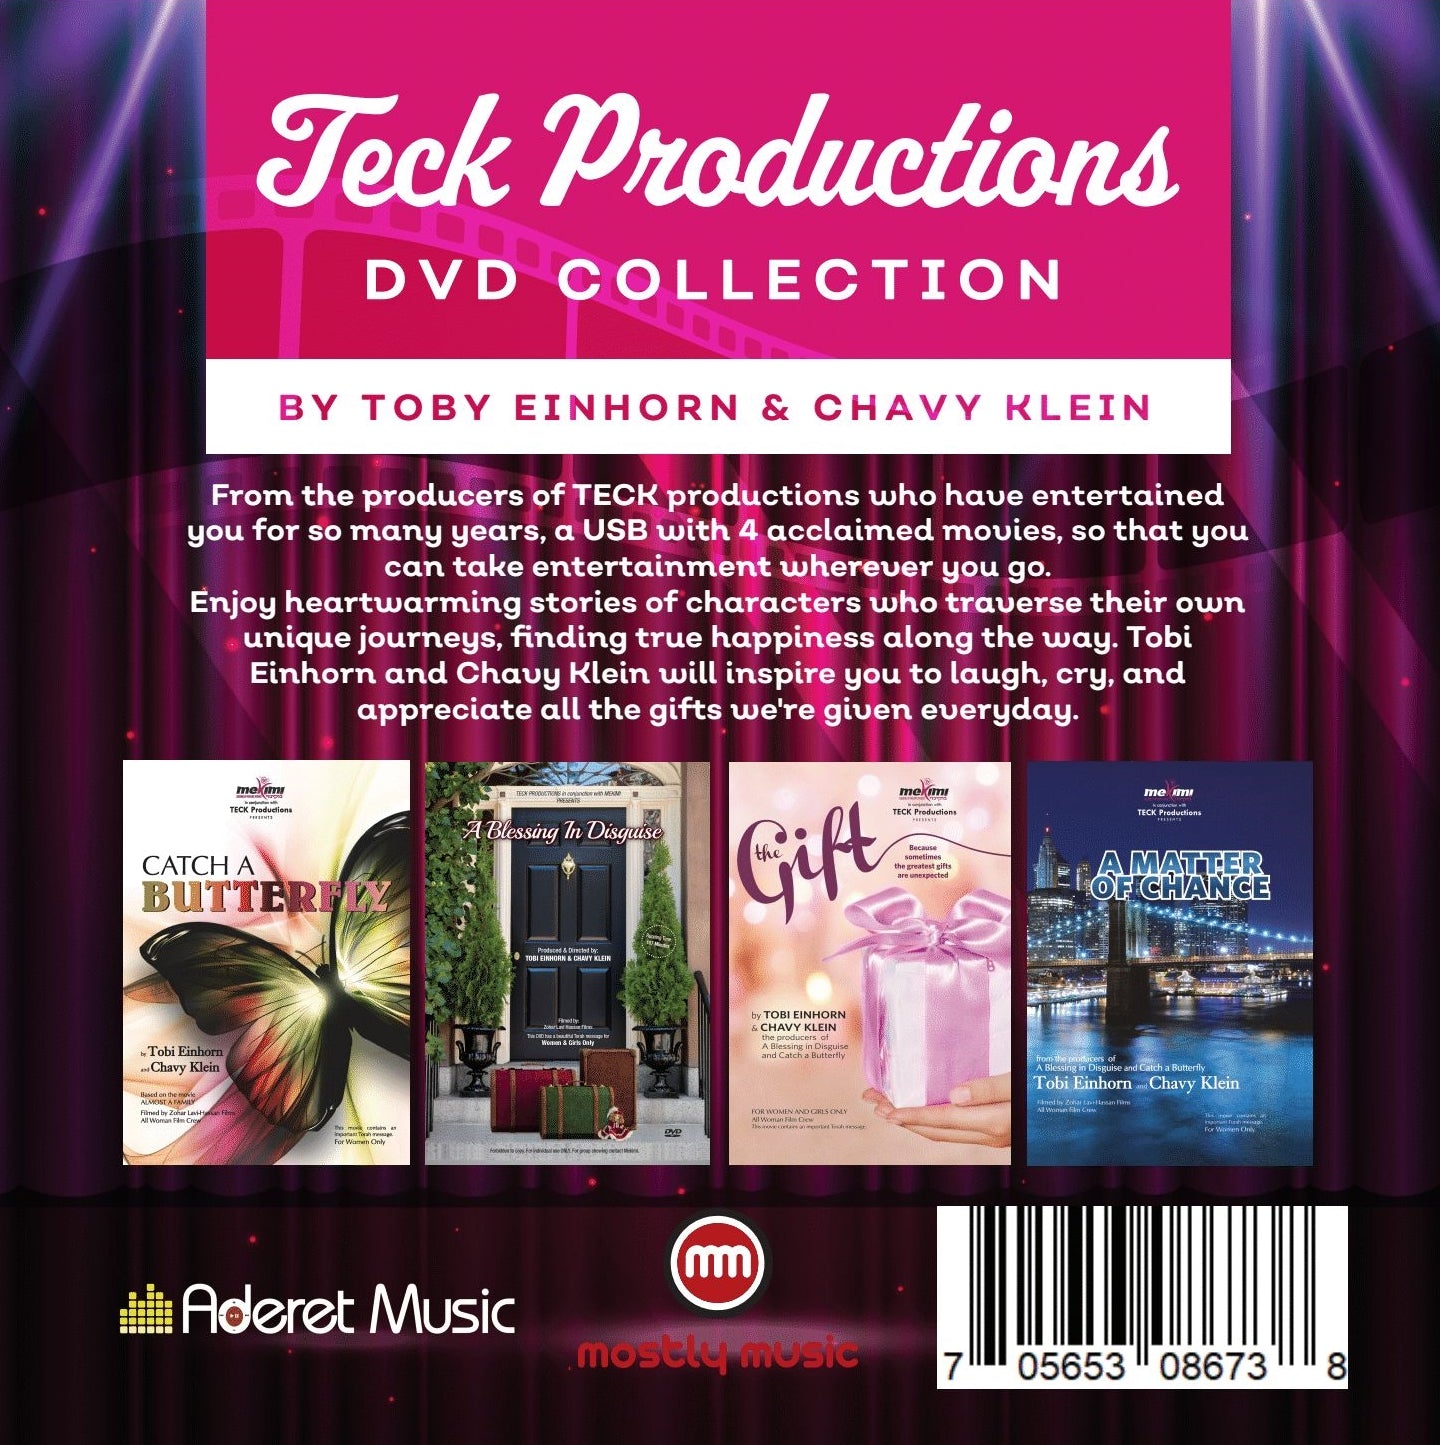 אוסף DVD של Teck Productios